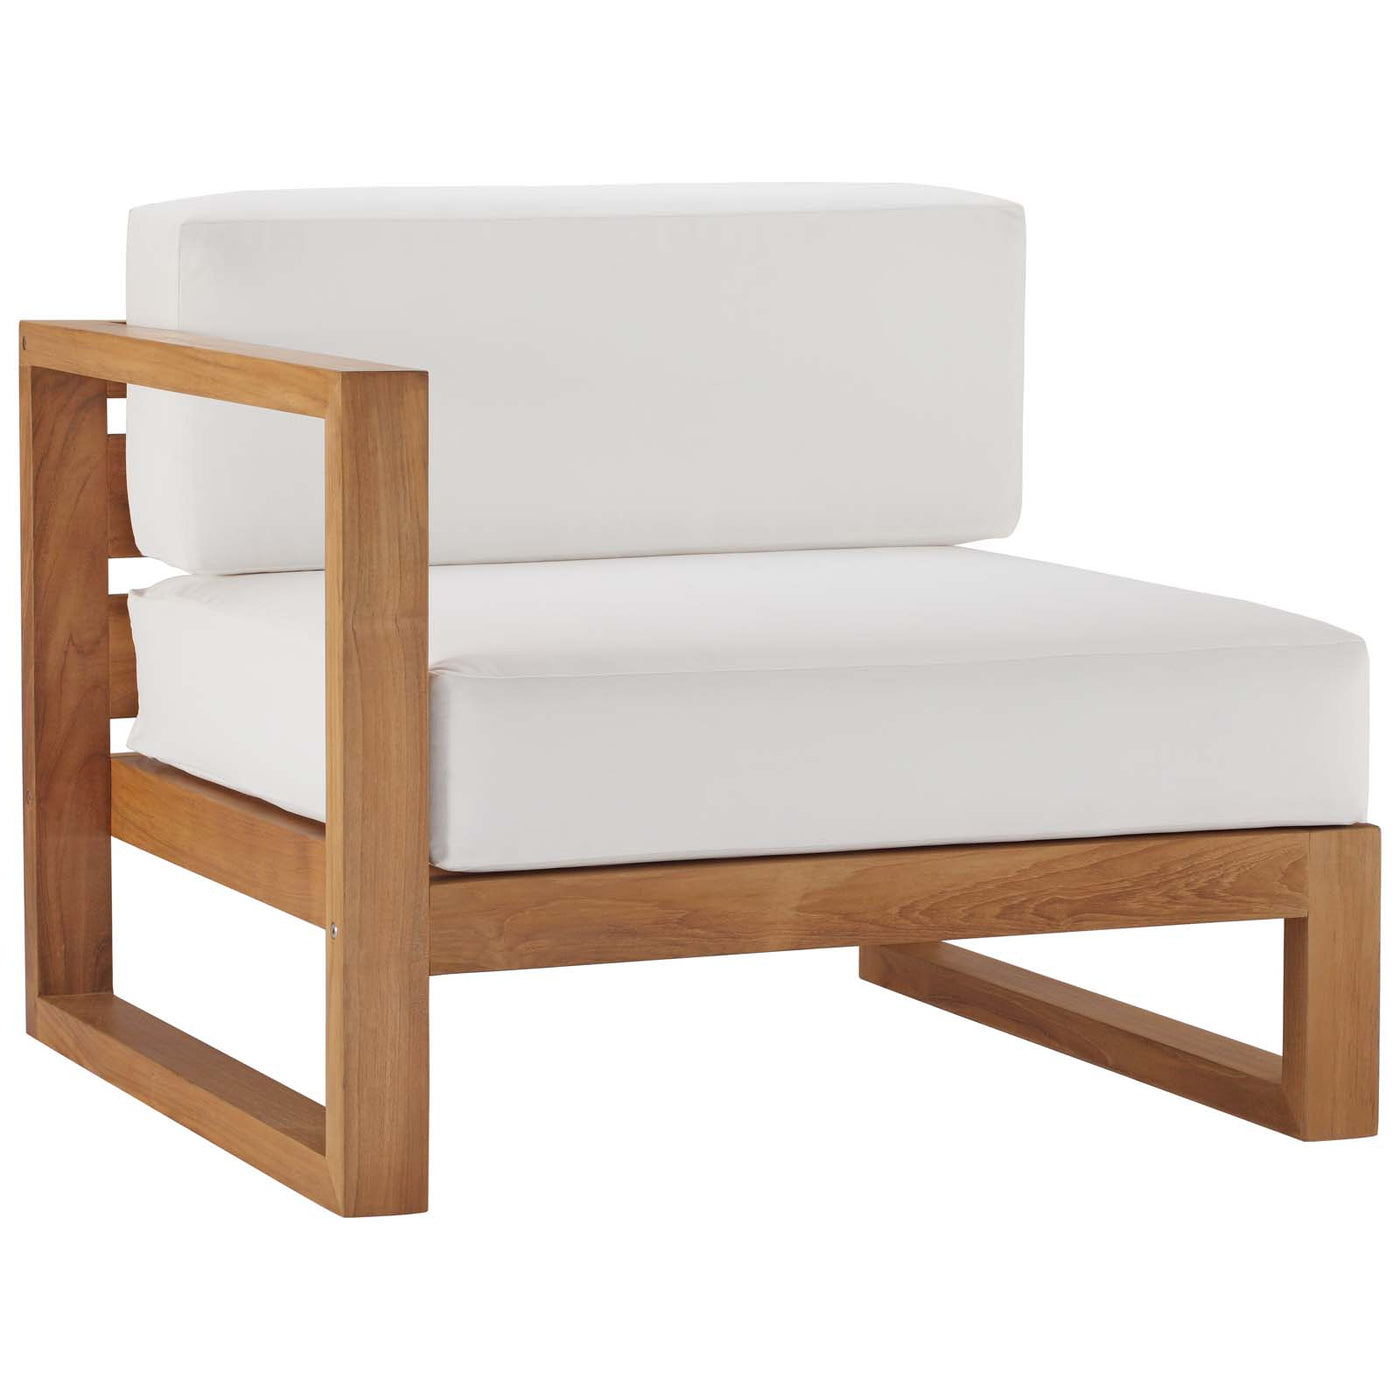 Upland Outdoor Patio Teak Wood 3-Piece Sectional Sofa Set